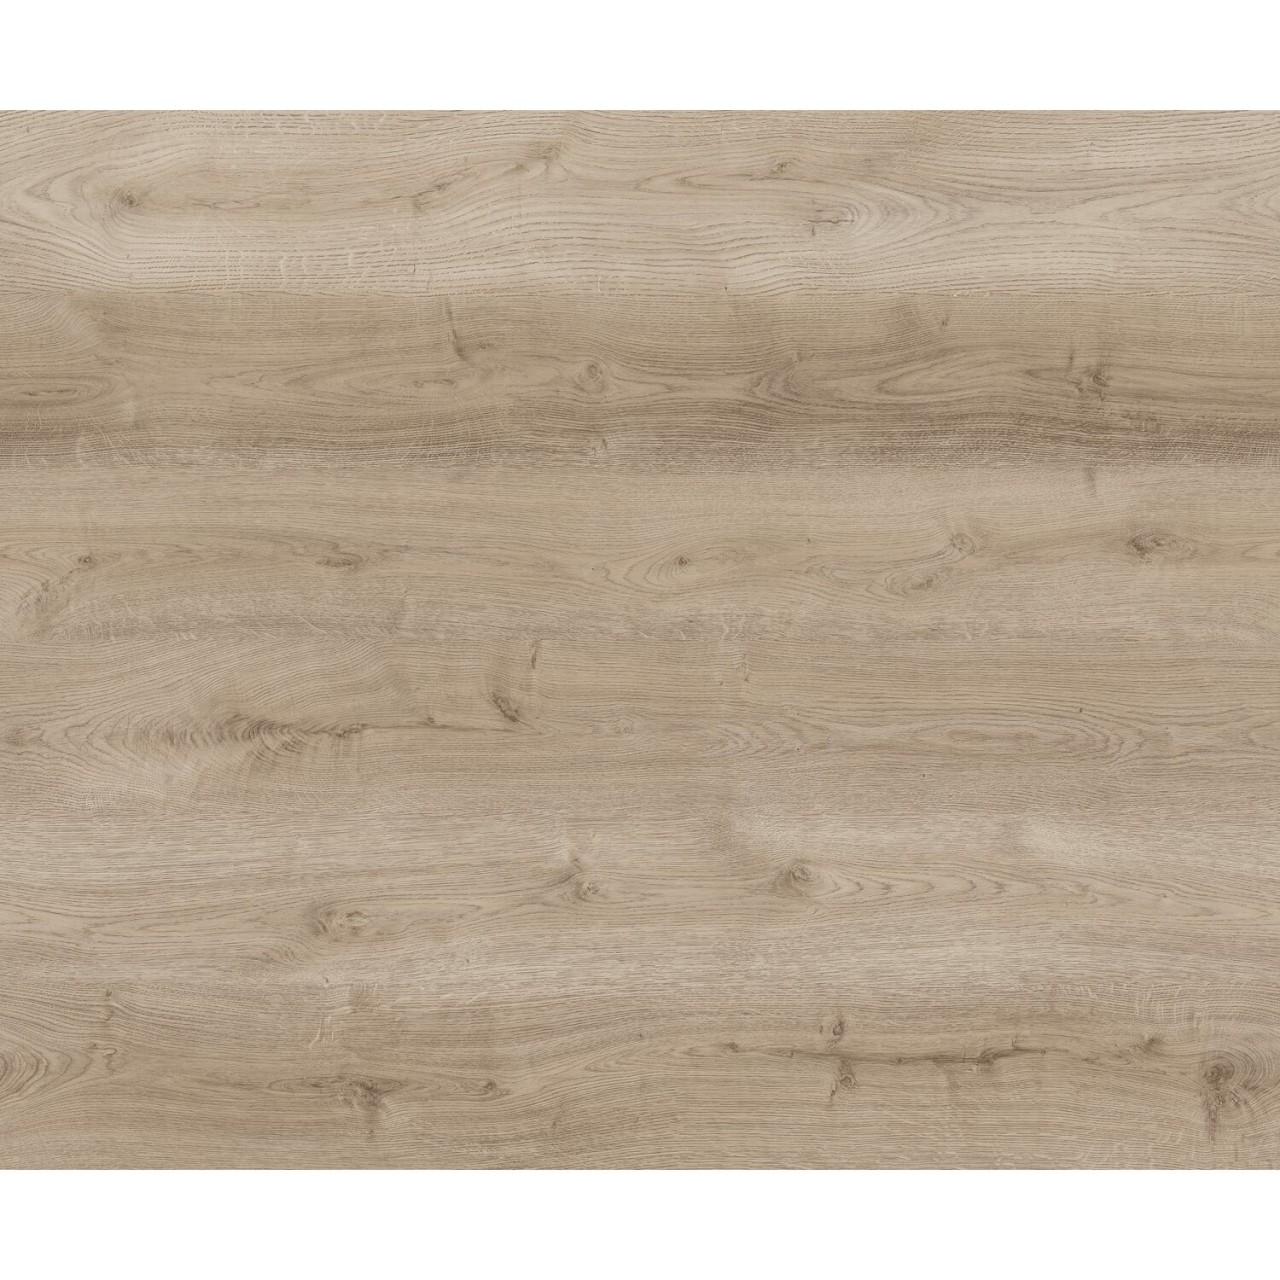 PARADOR Vinylboden Eiche hell natur Landhausdiele Holzstruktur | Click In | 14,5 m²